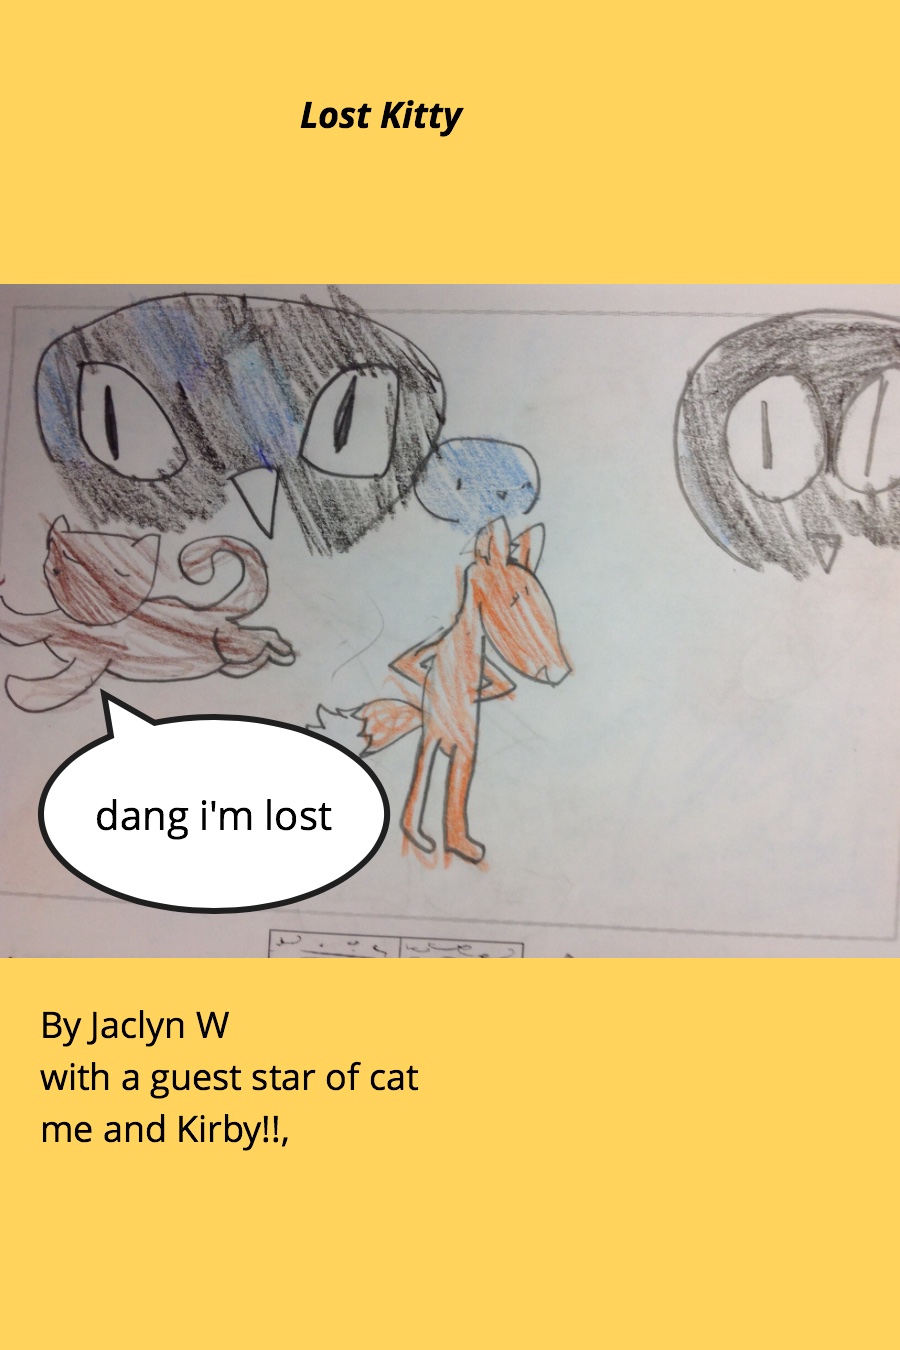 Lost Kitty by Jaclyn W